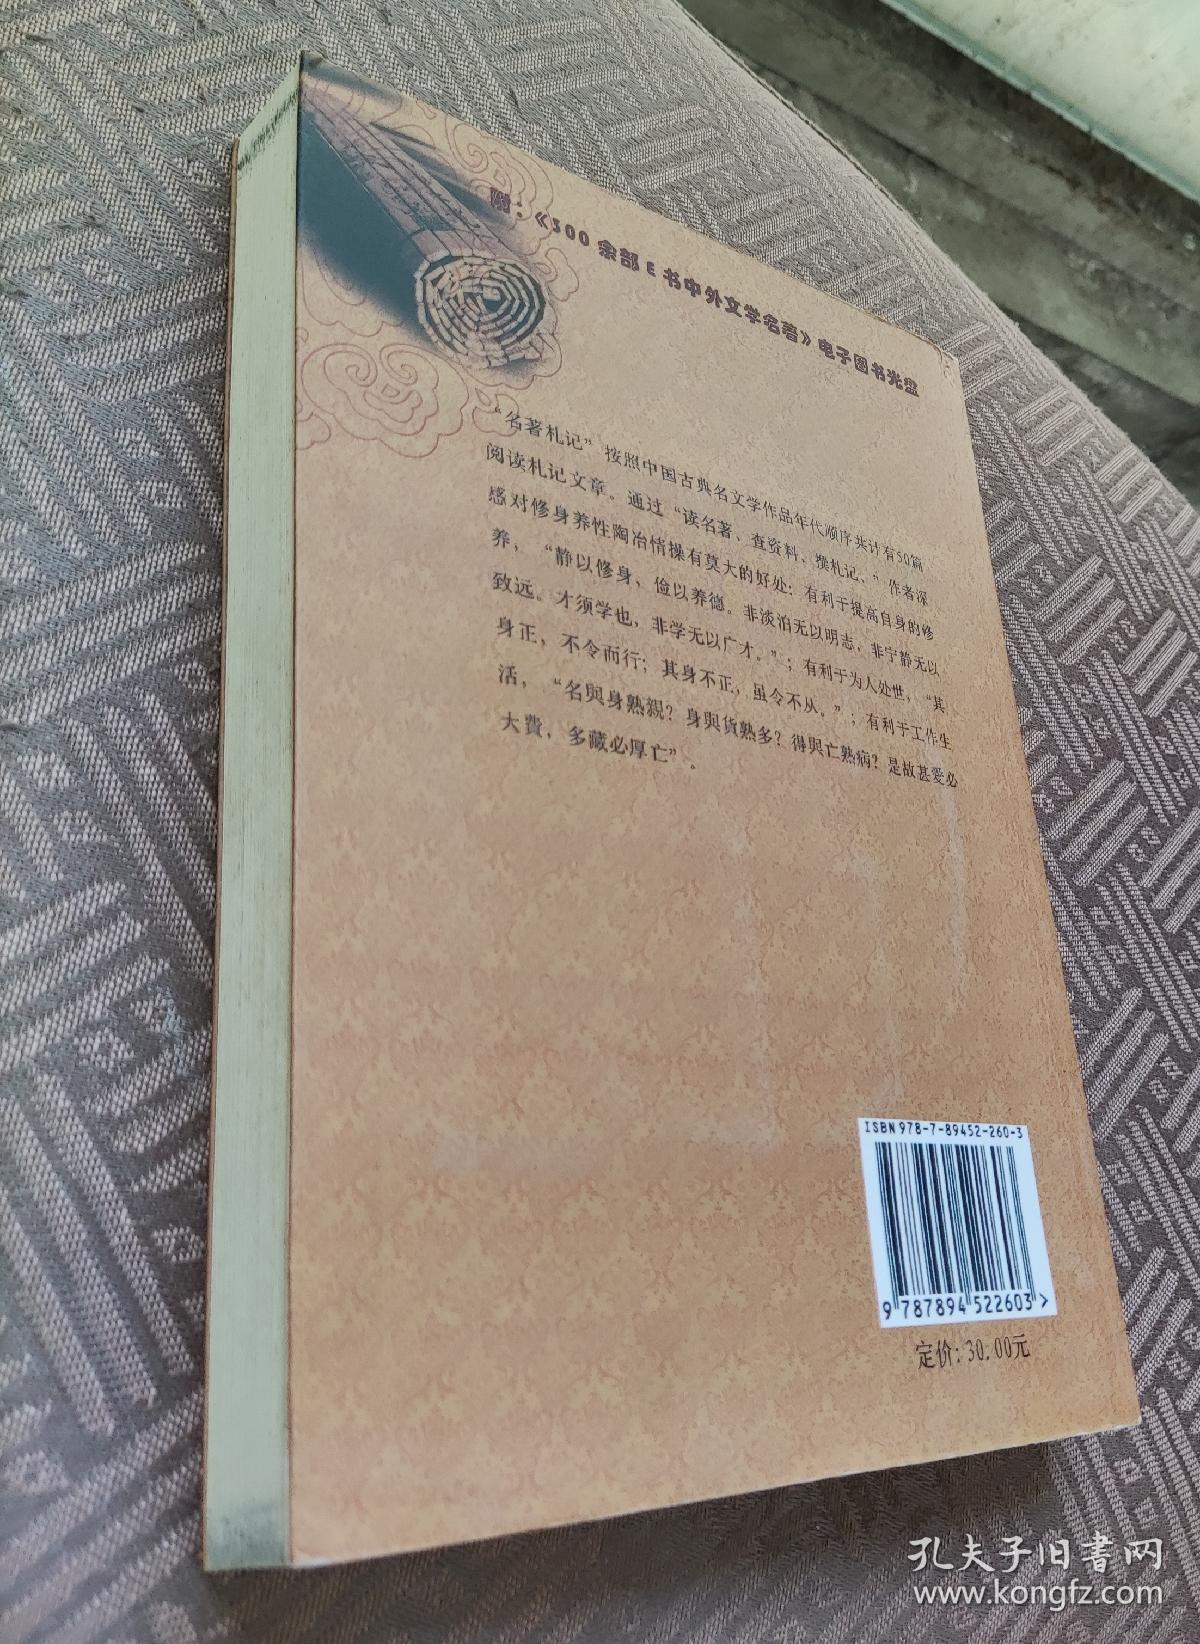 名著札记-中国古典文学部分 附光盘